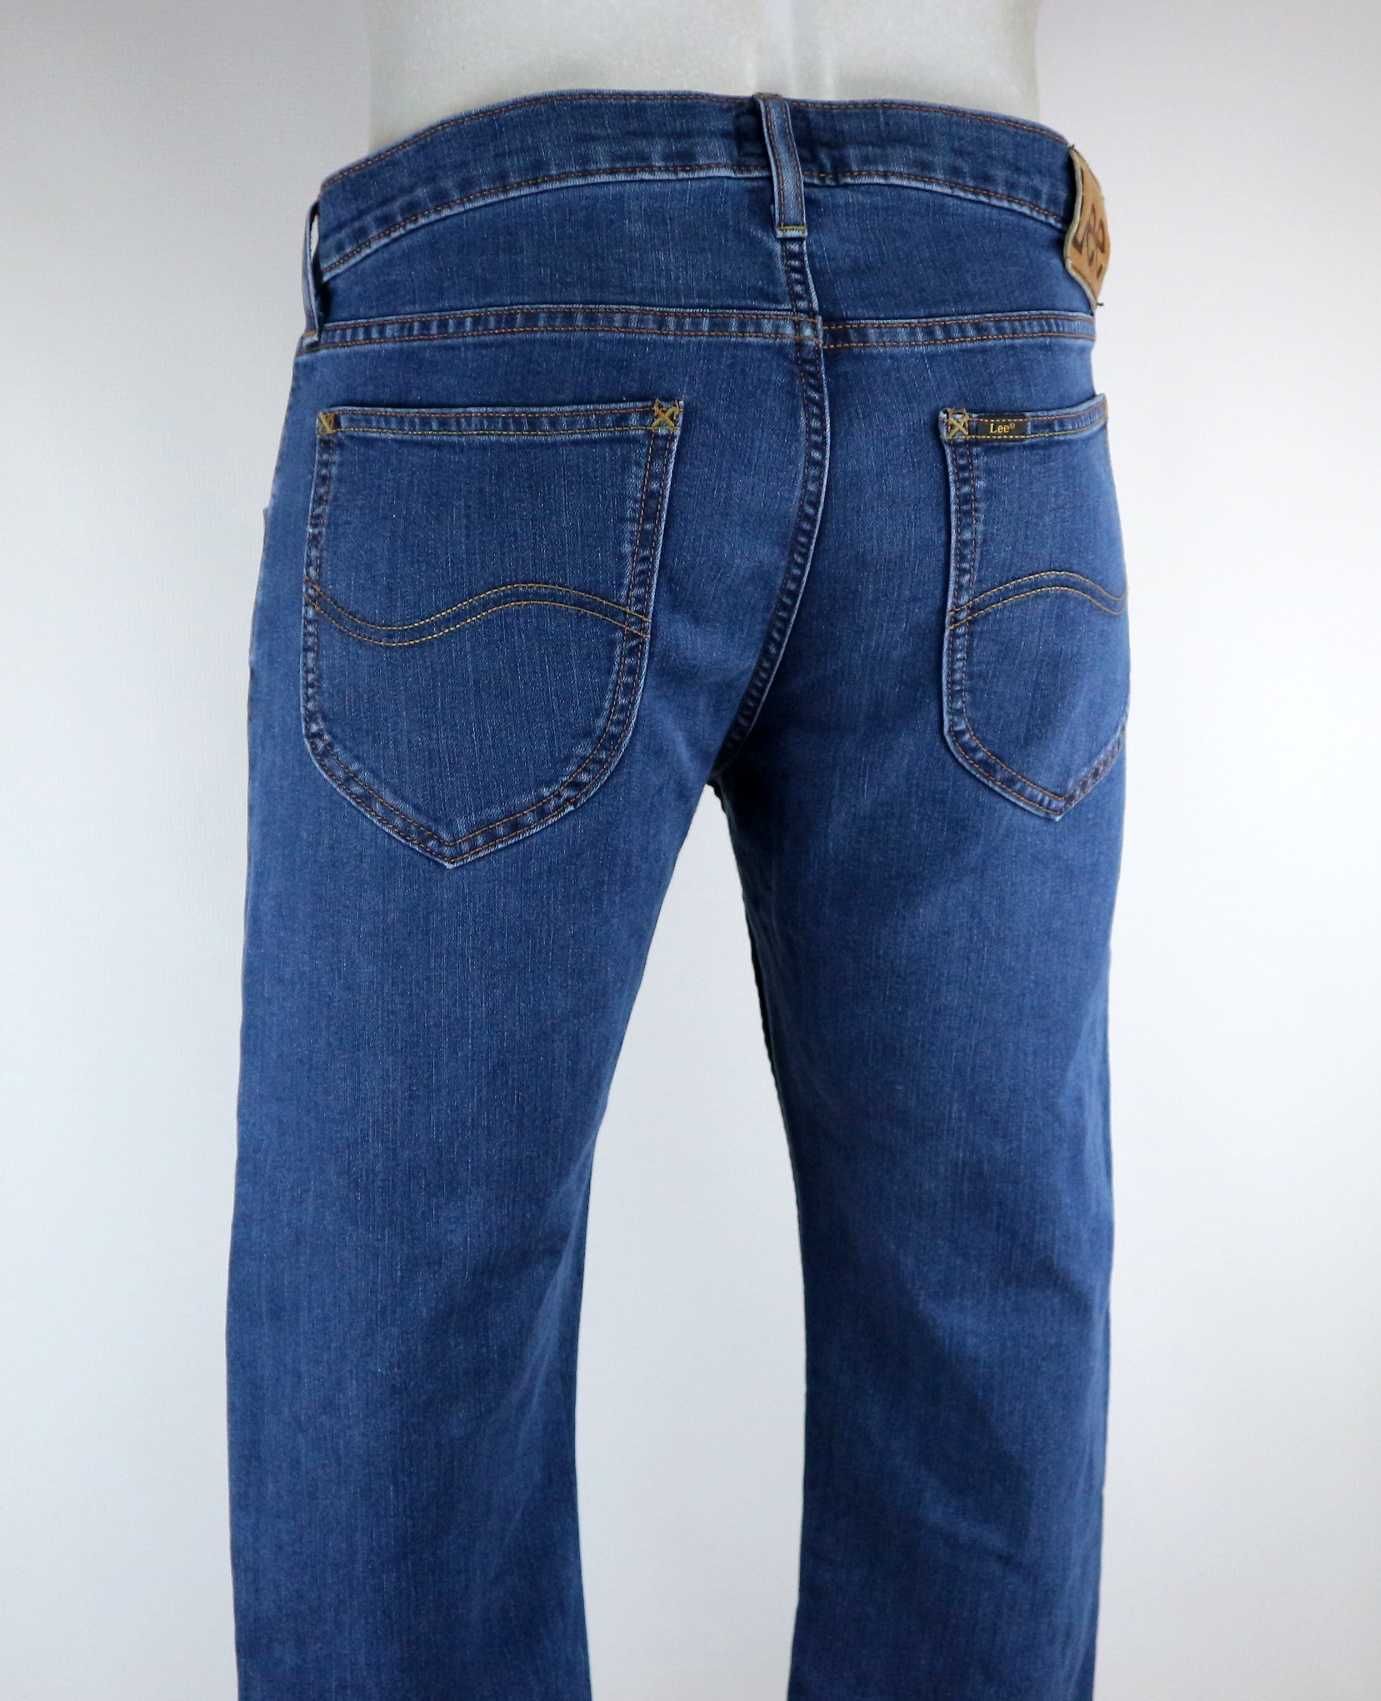 Lee Daren Zip Fly spodnie jeansy W34 L30 pas 2 x 45/47 cm